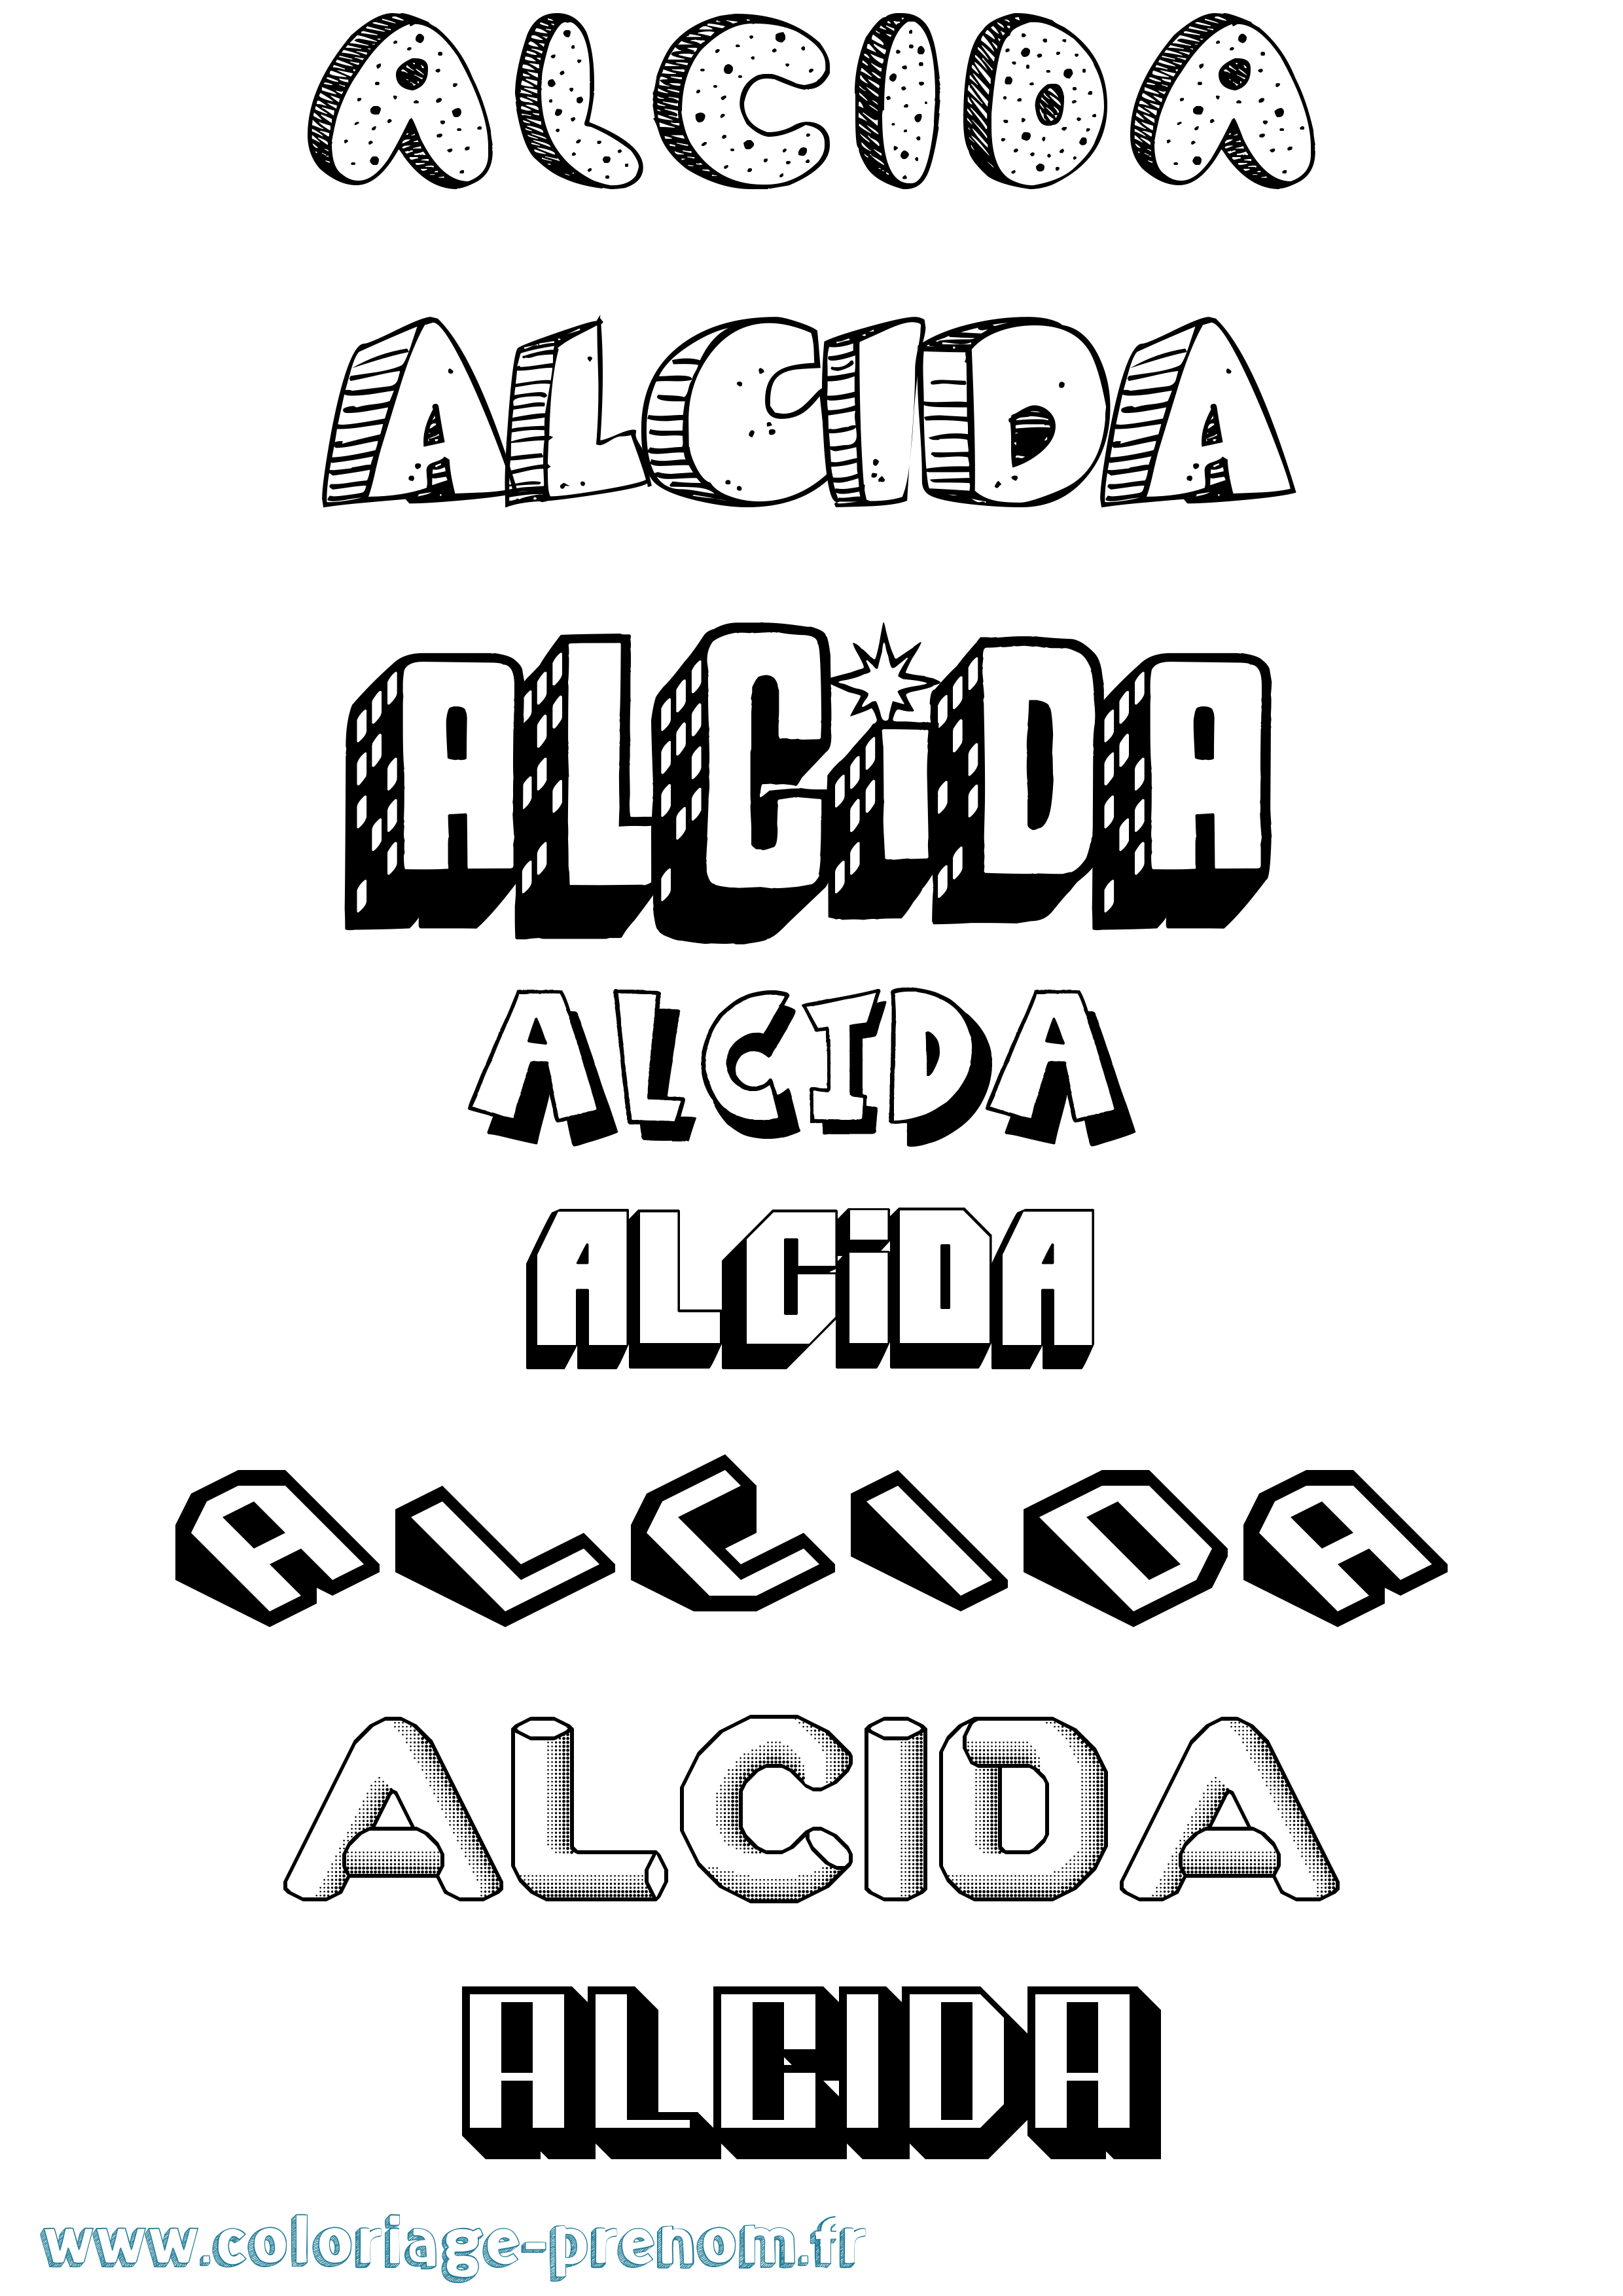 Coloriage prénom Alcida Effet 3D